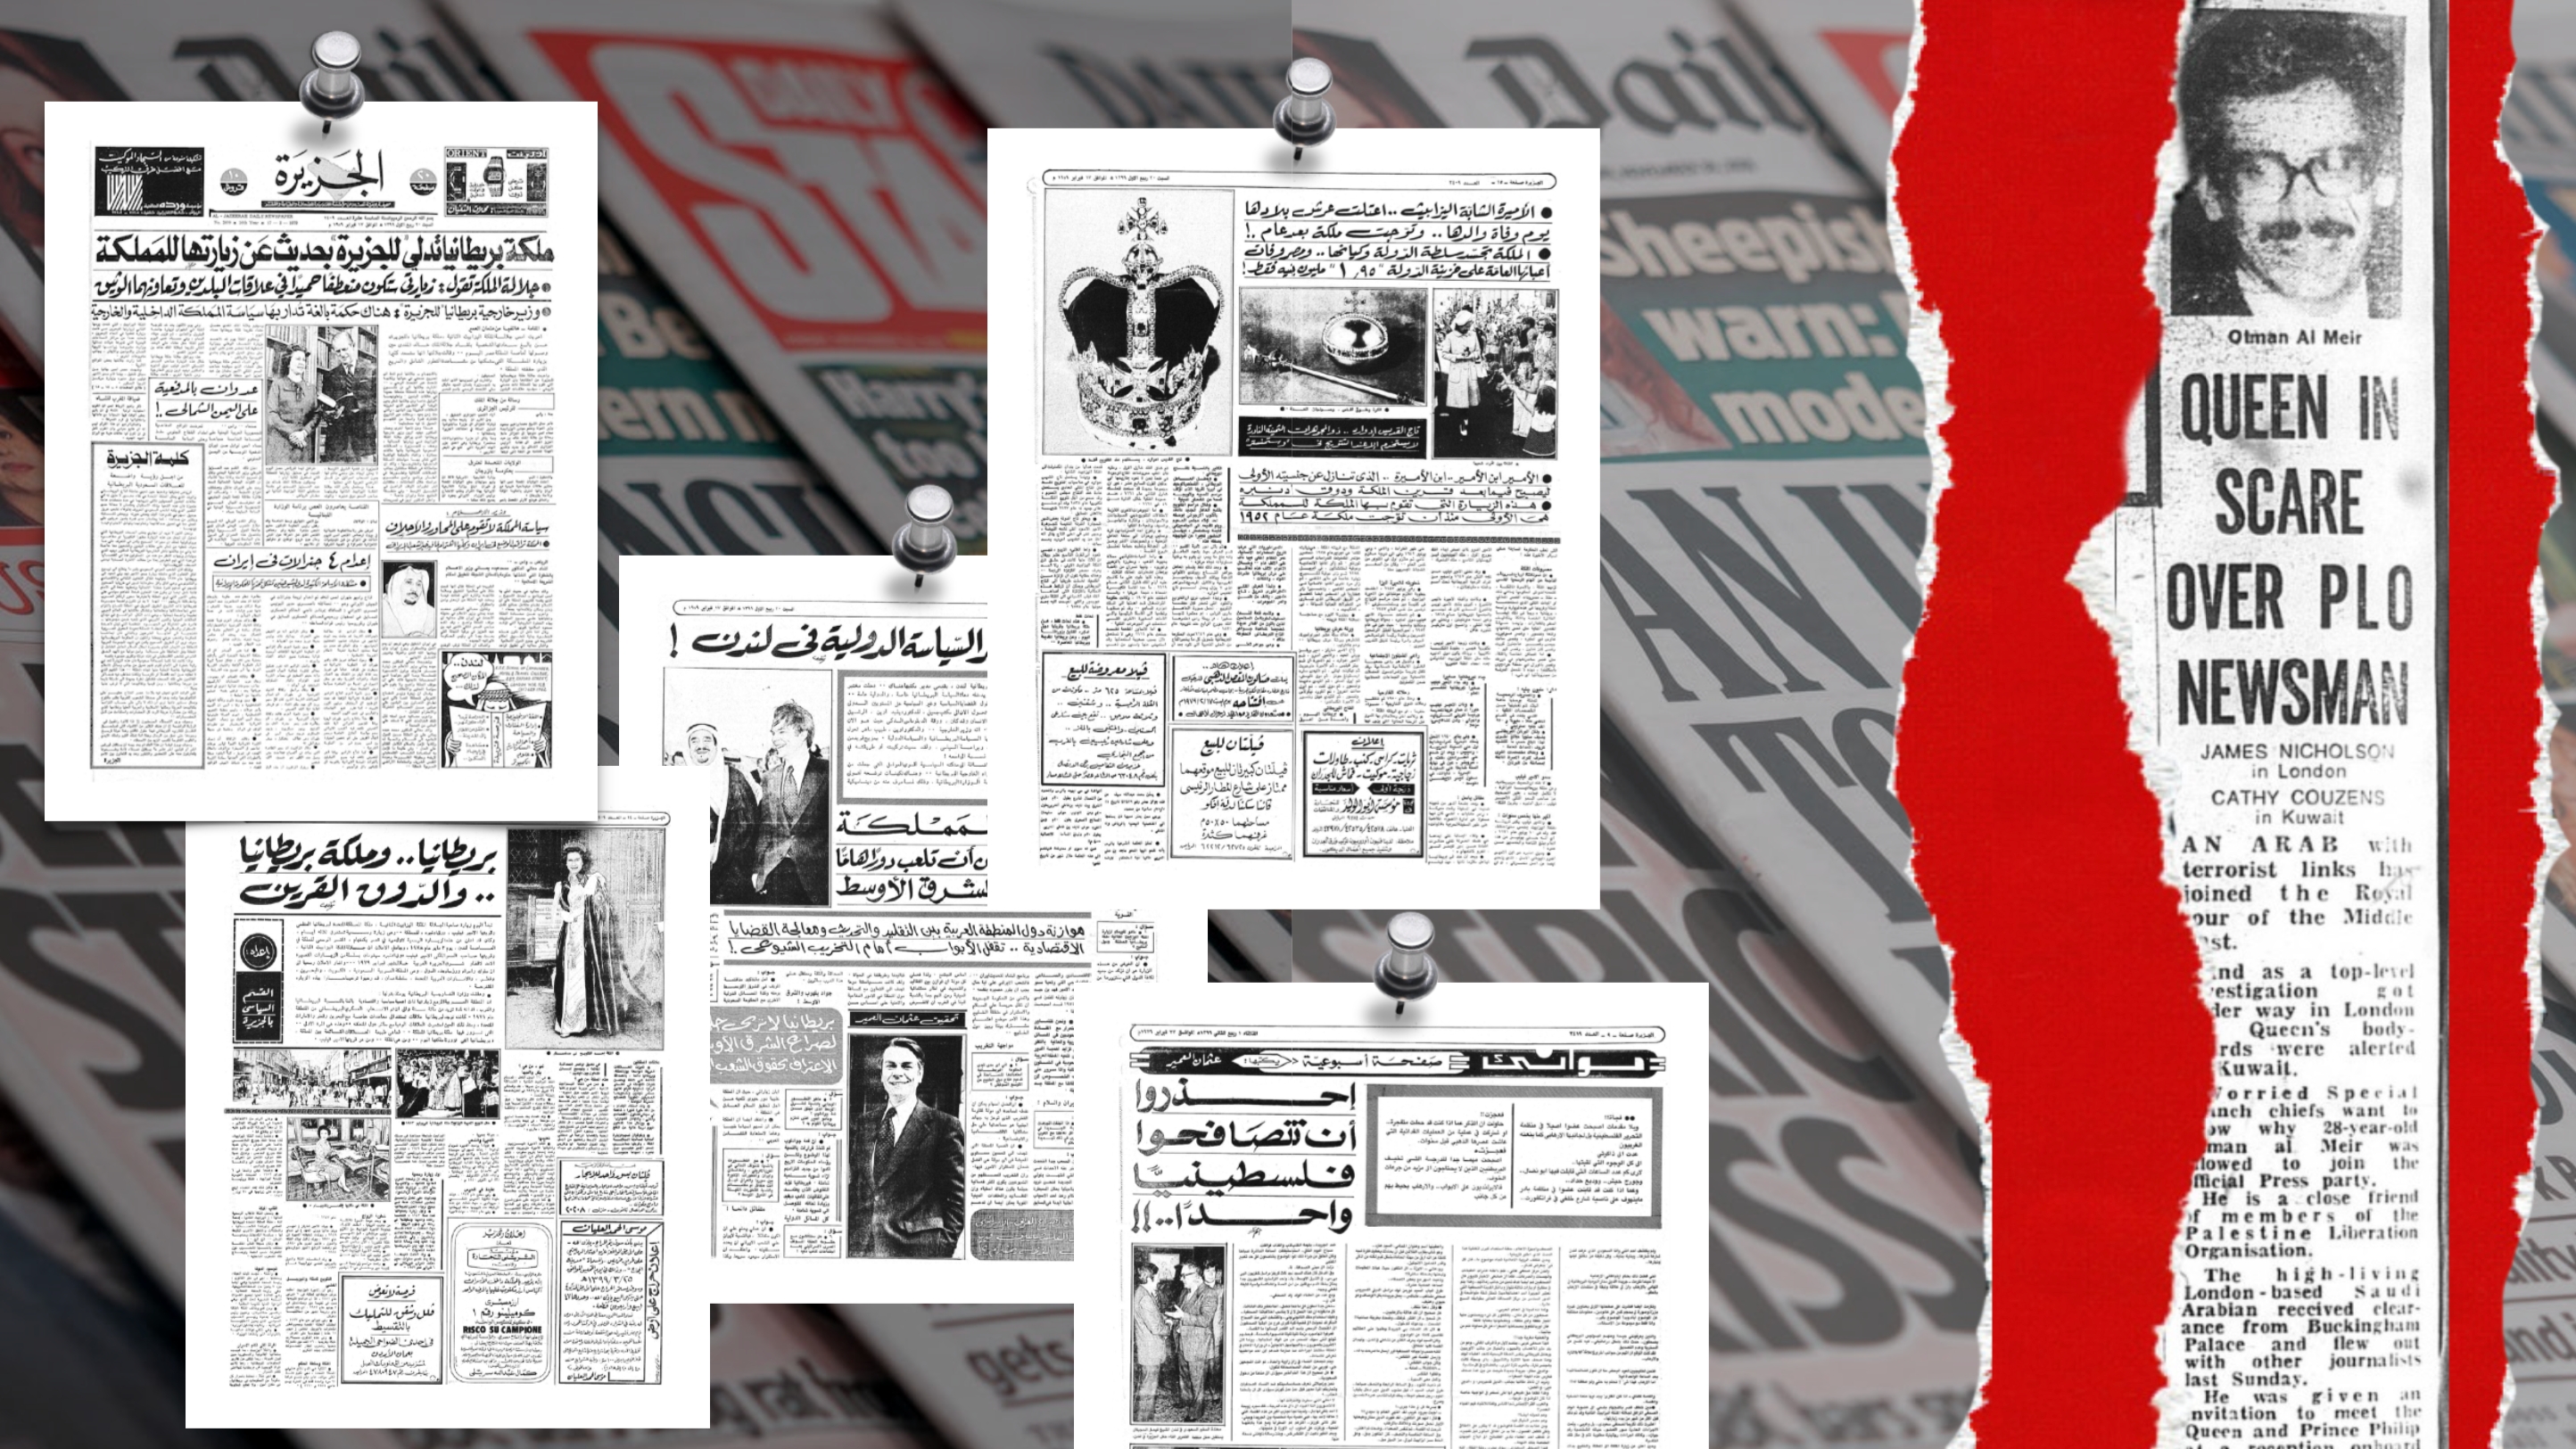 تغطية صحيفة الجزيرة في 27 فبراير 1979 للجولة الملكية في الخليج، وعلى اليمين: ما نشرته صحيفة الدايلي ستار يوم 14 فبراير 1979